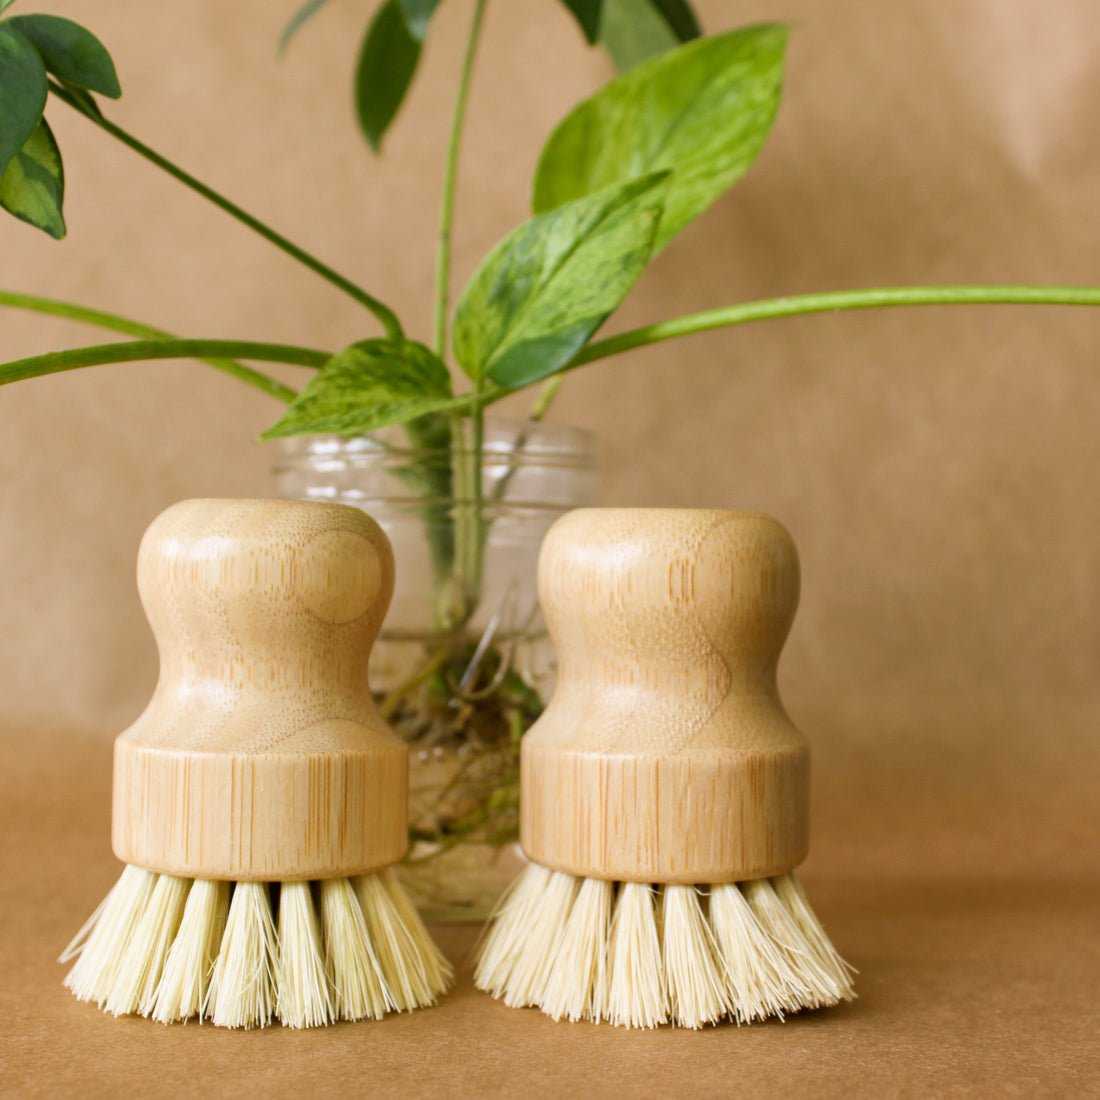 Bamboo Soft Bristle Pot Scrubber